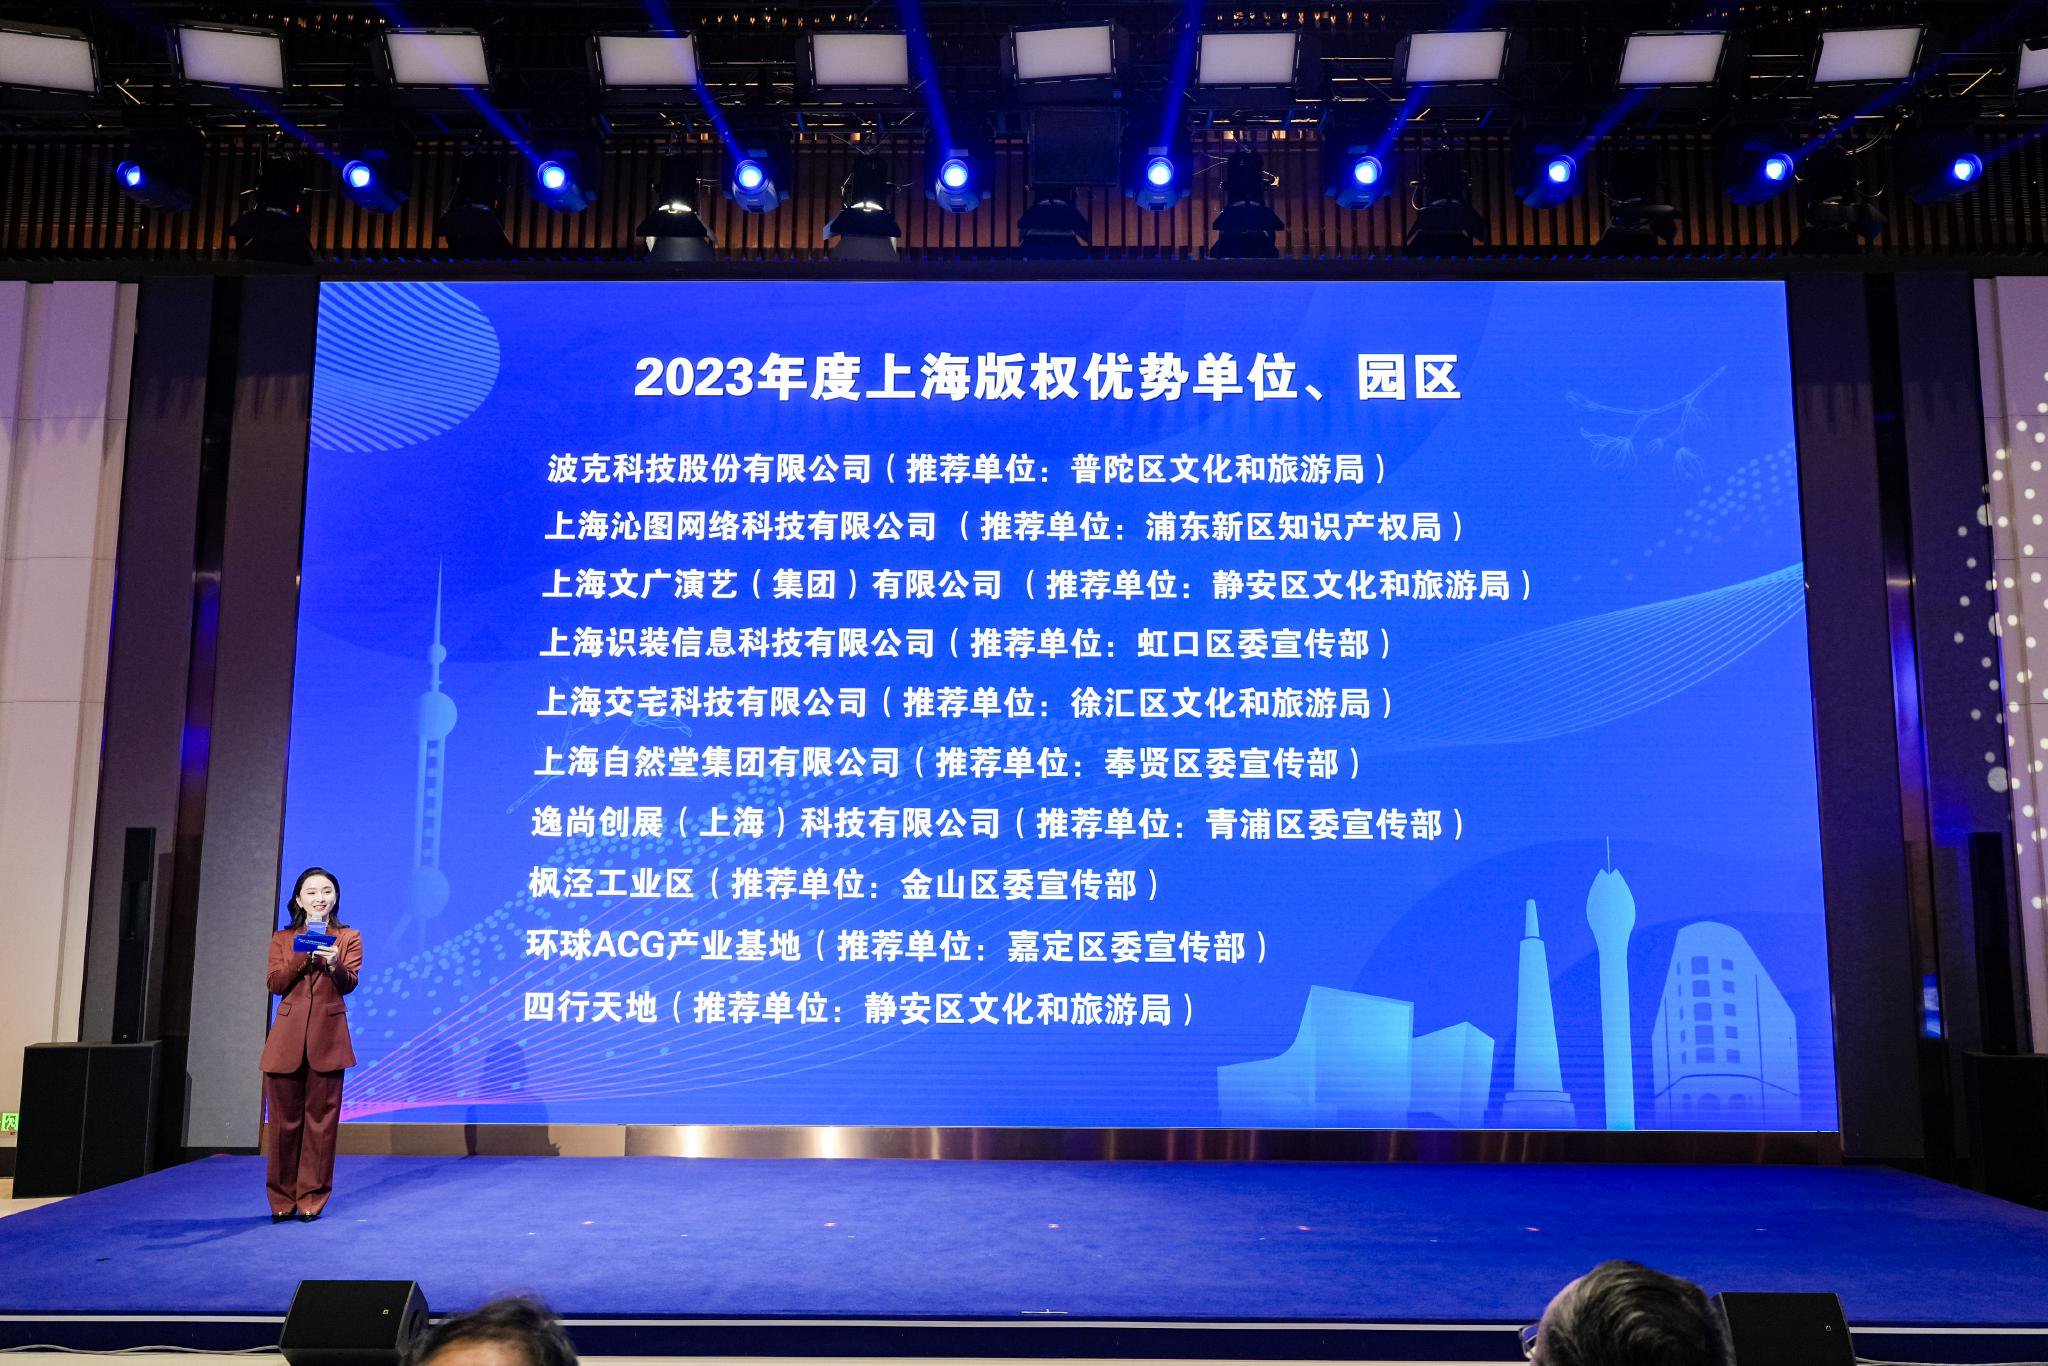 2023年度上海版权优势单位、园区